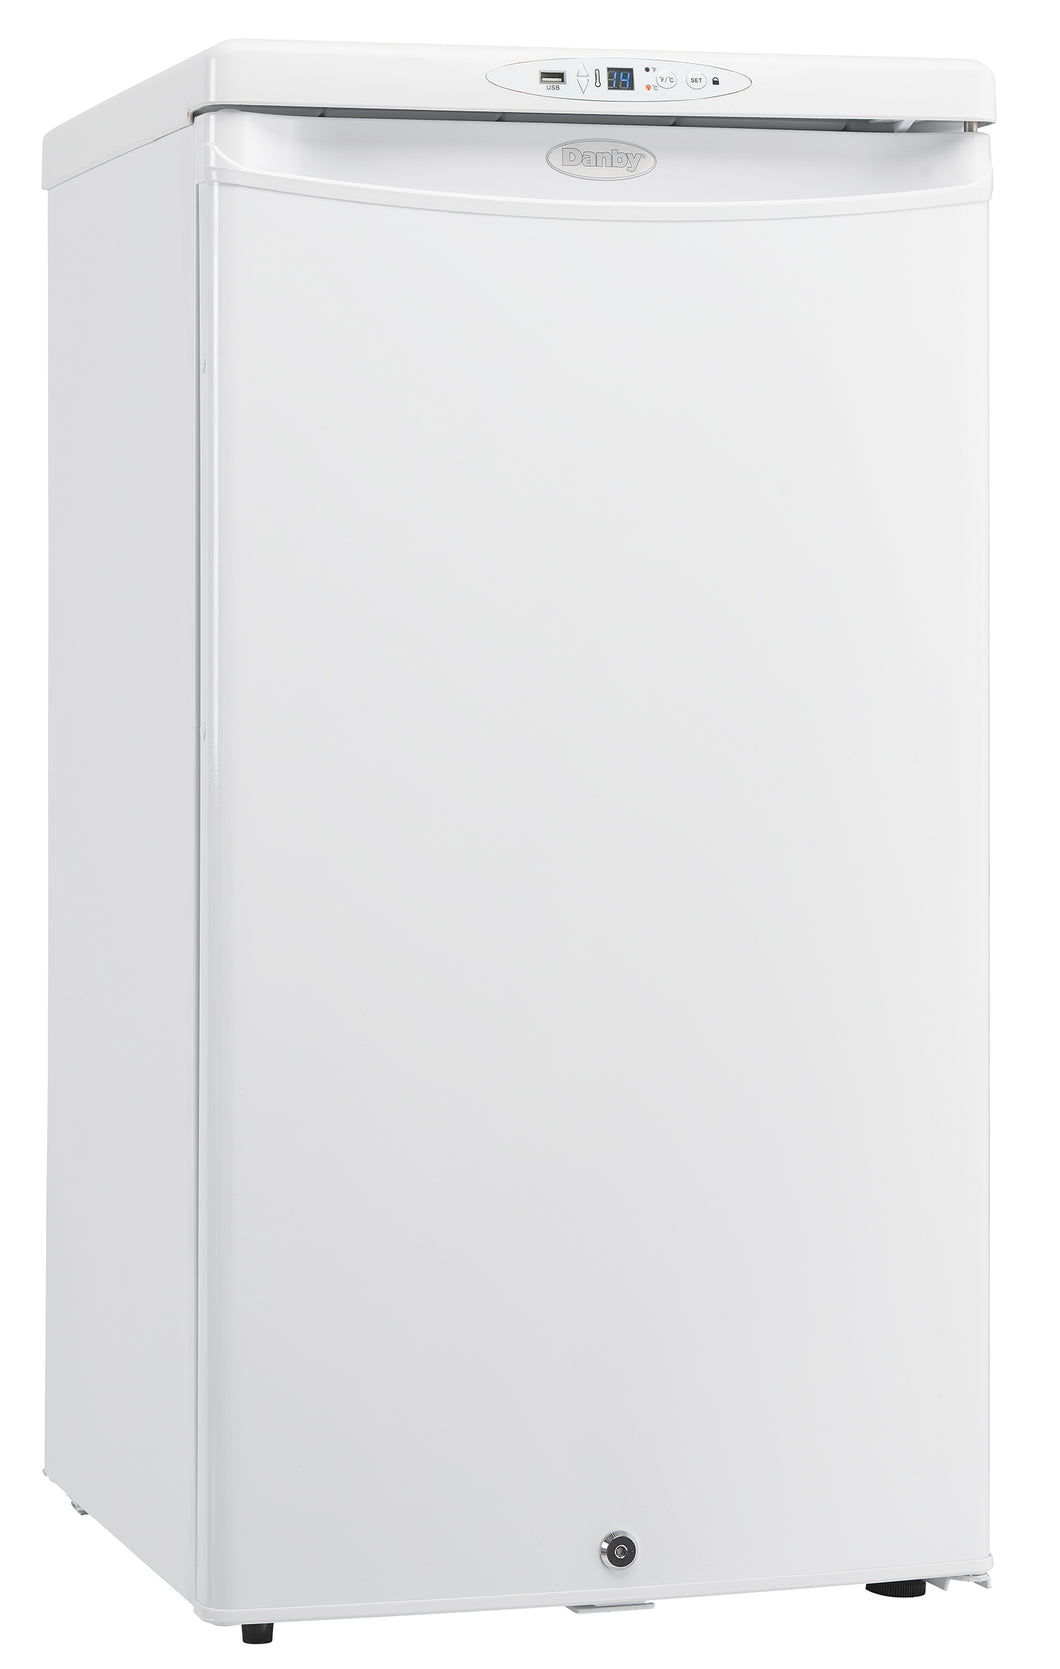 DH032A1W- Danby Health 3.2 cu. ft. Medical Refrigerator